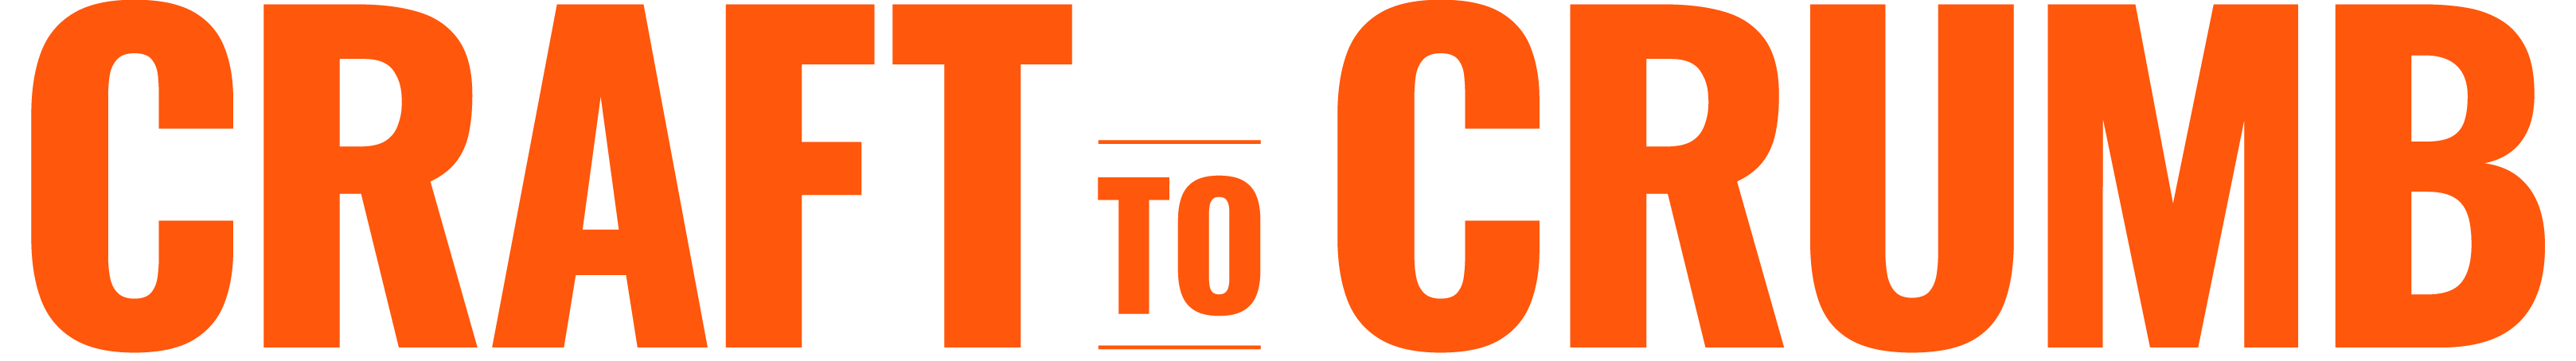 Craft to Crumb Orange Logo